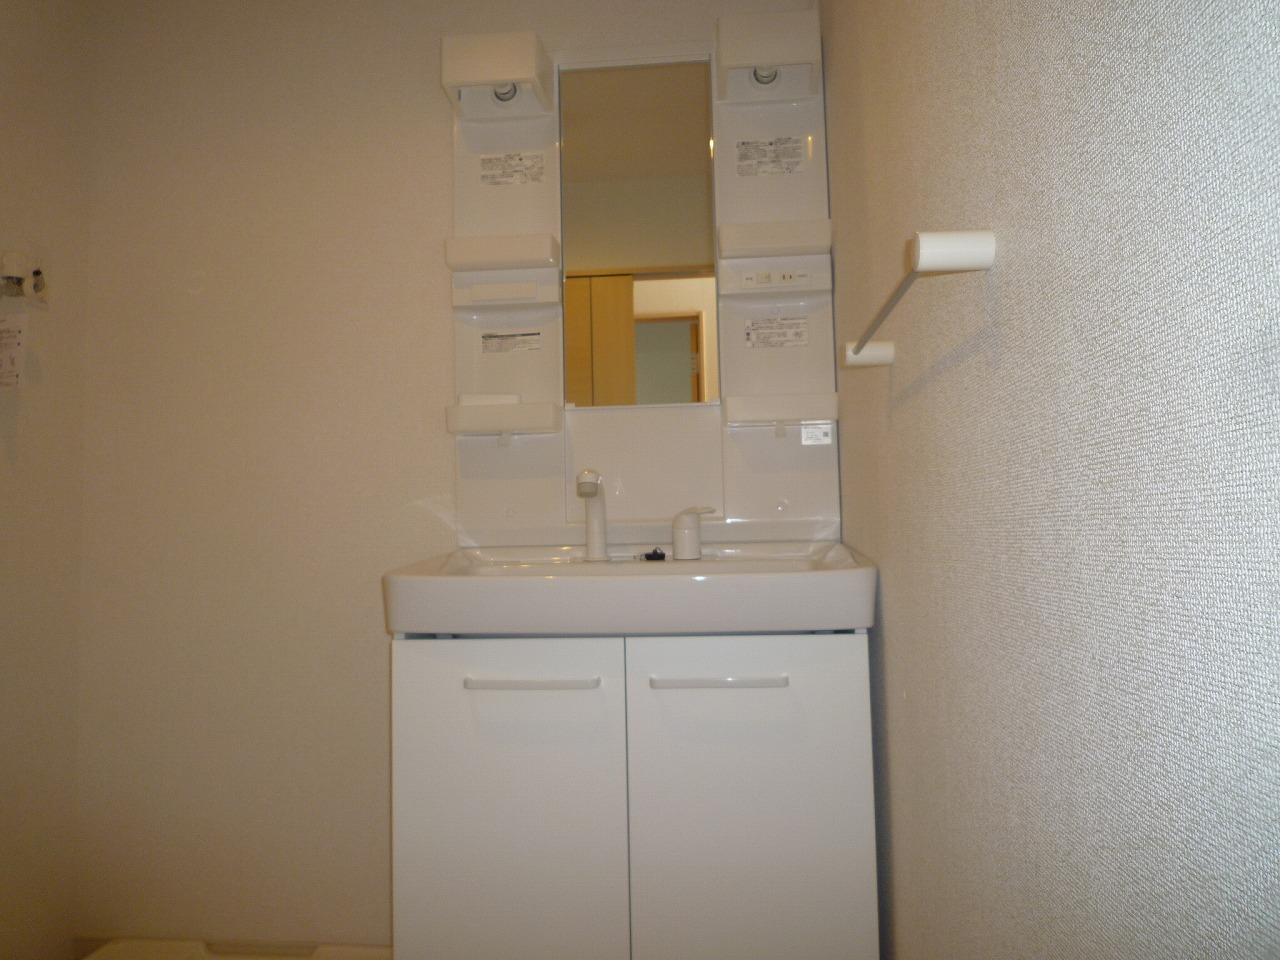 Washroom. Inverted type (Room 201)